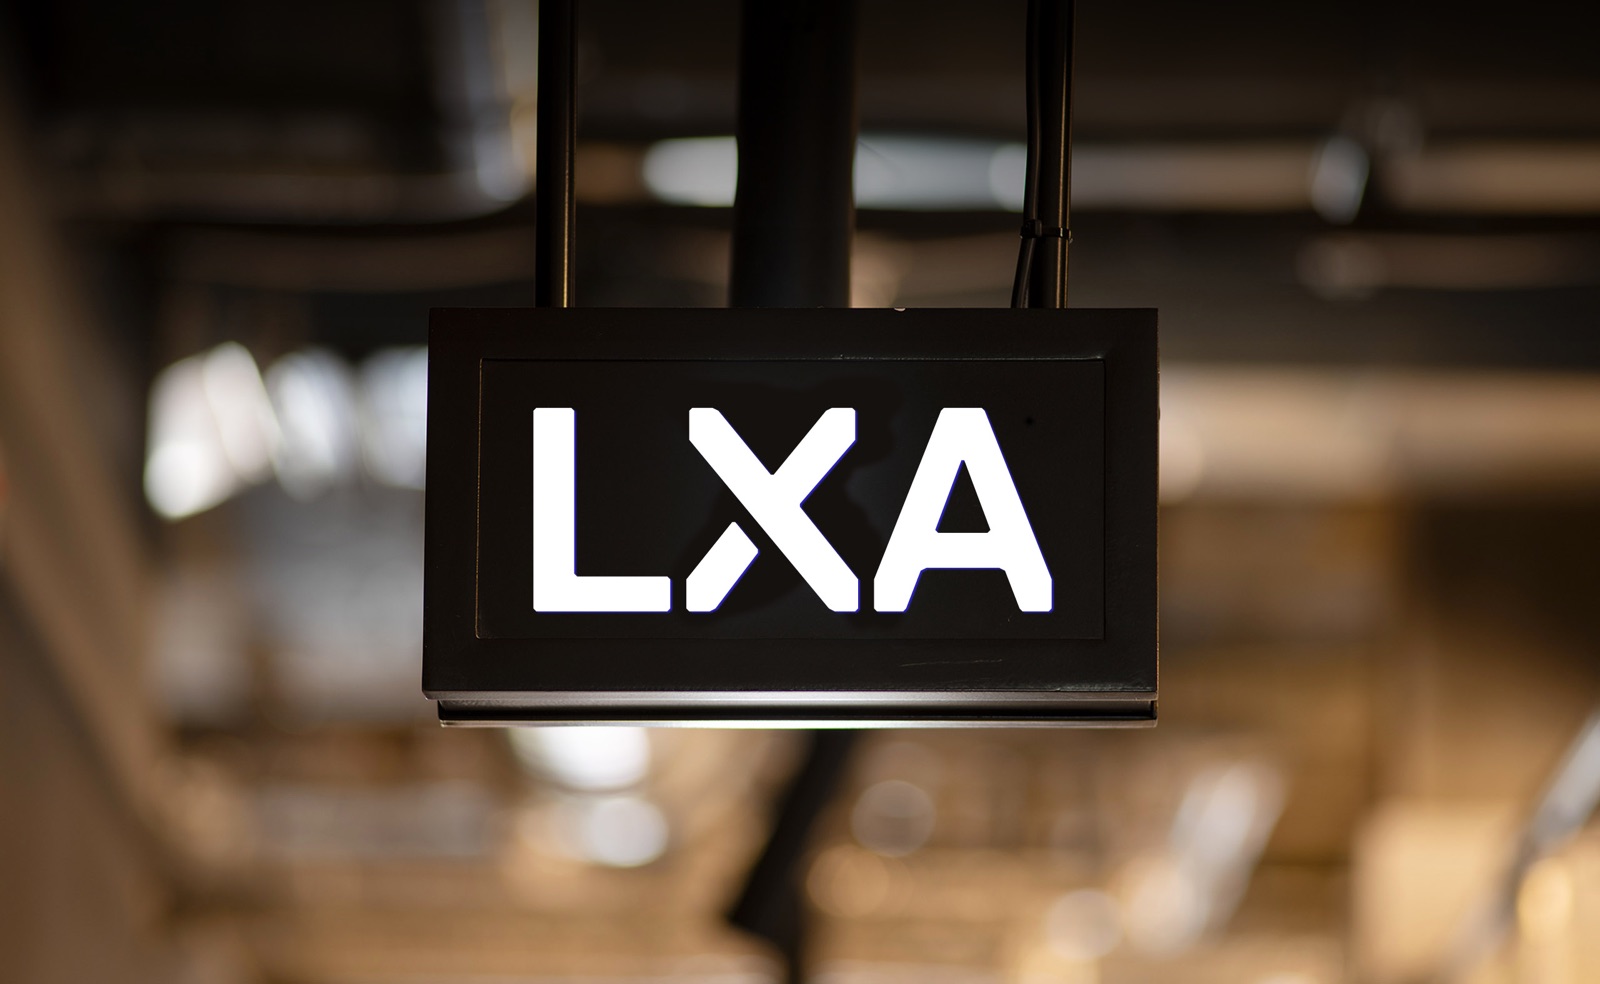 lxa branding design by Leeds based Freelance Designer Neil Holroyd